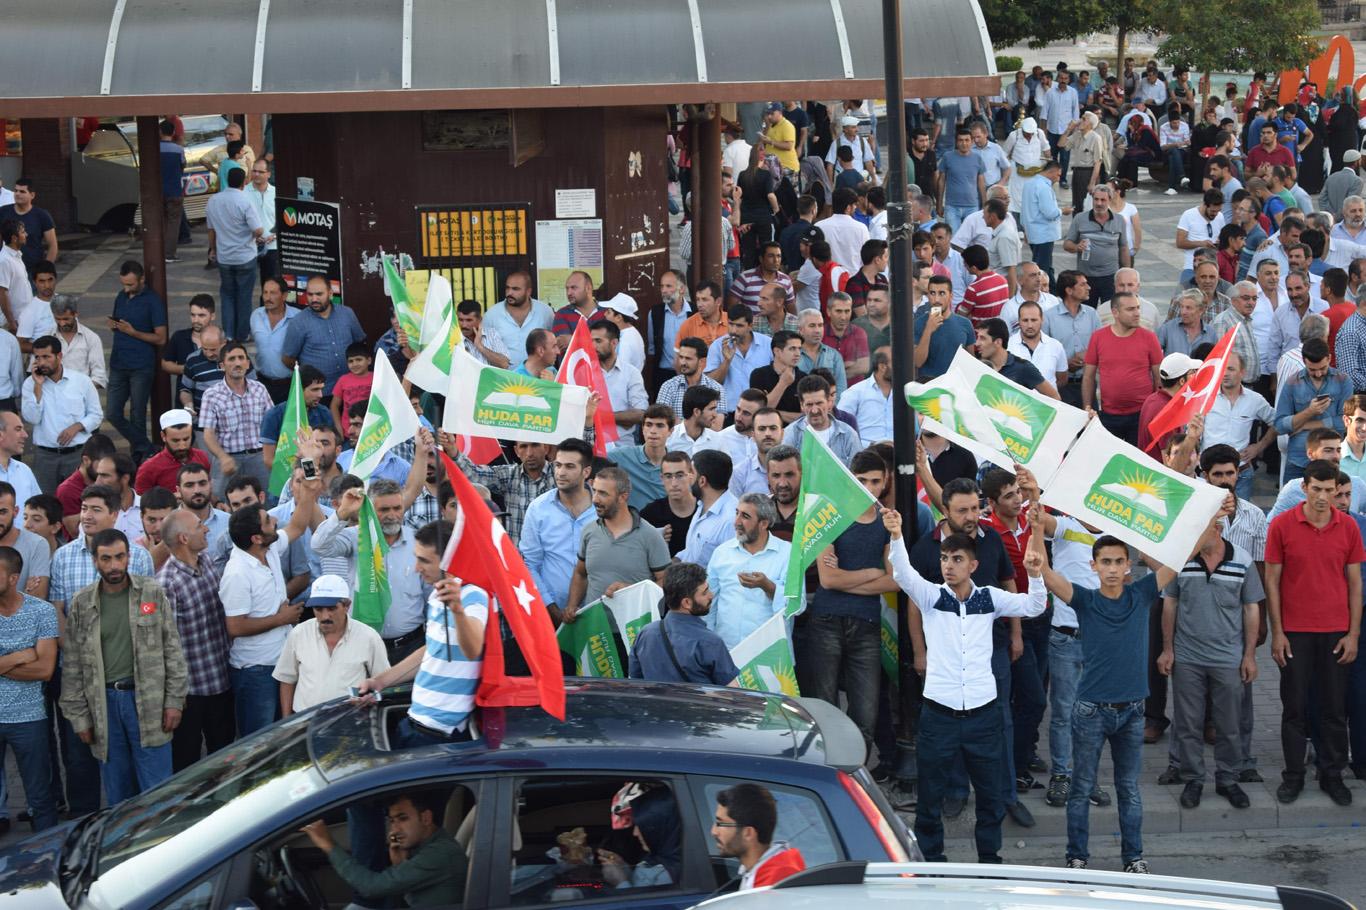 HÜDA PAR’dan Malatya’daki darbe protestolarına büyük destek